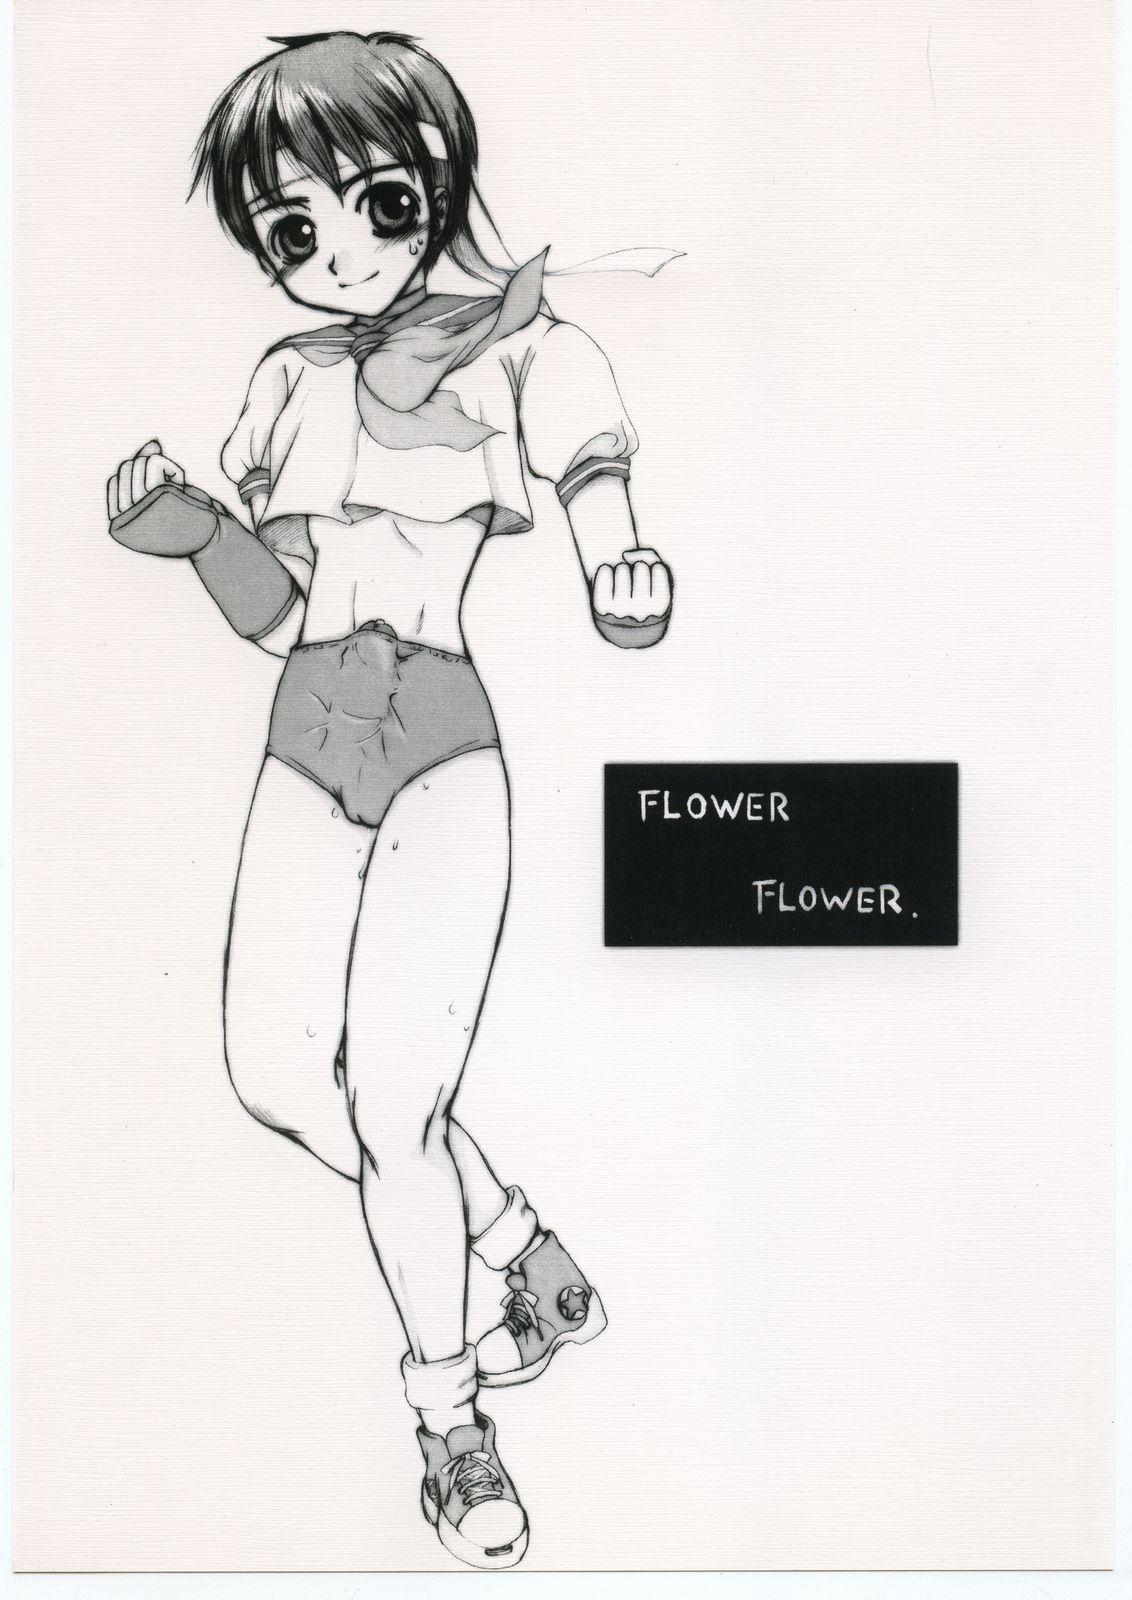 FLOWER FLOWER. 0